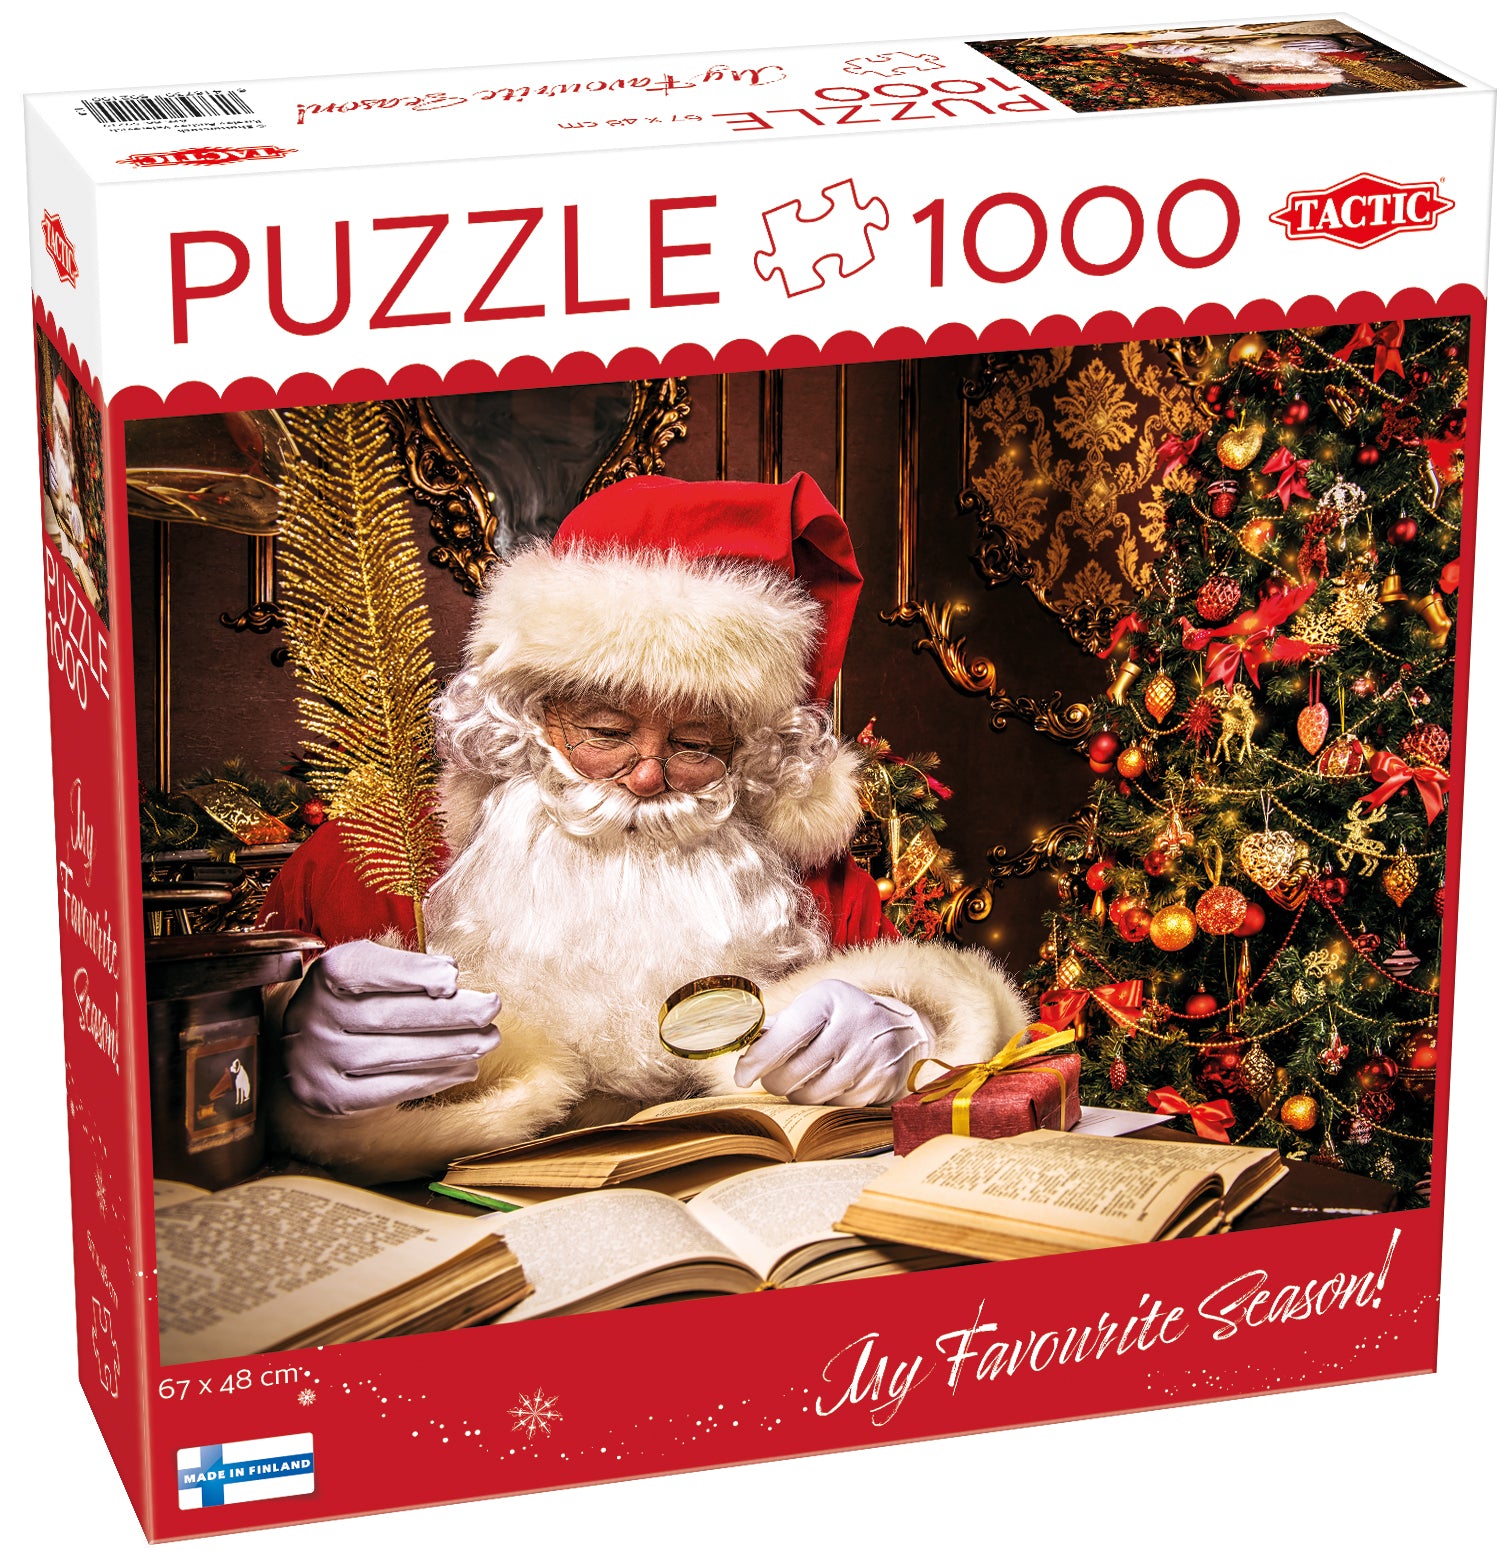 Tactic Puzzle 1000 pc Santa Claus in Lapland